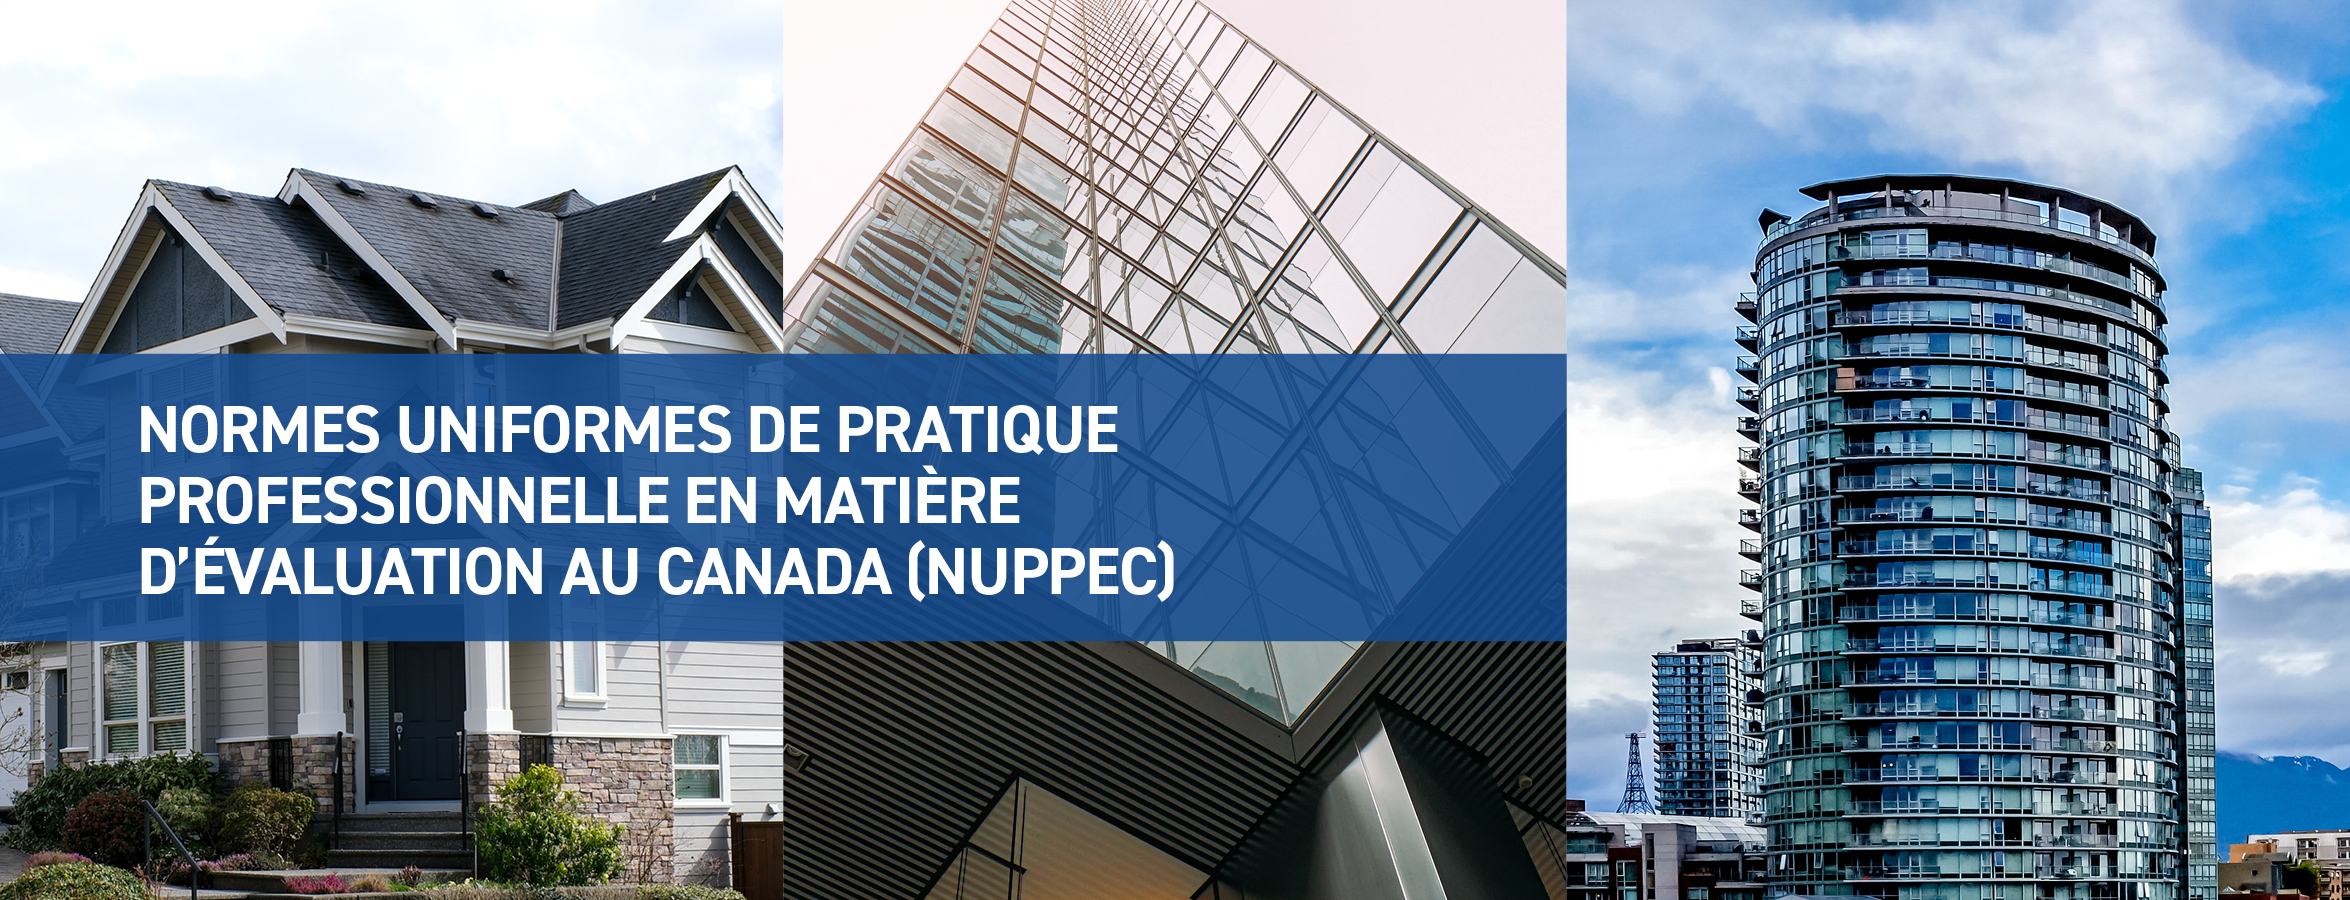 Normes uniformes de pratique professionnelle en matière d'évaluation au Canada (NUPPEC)